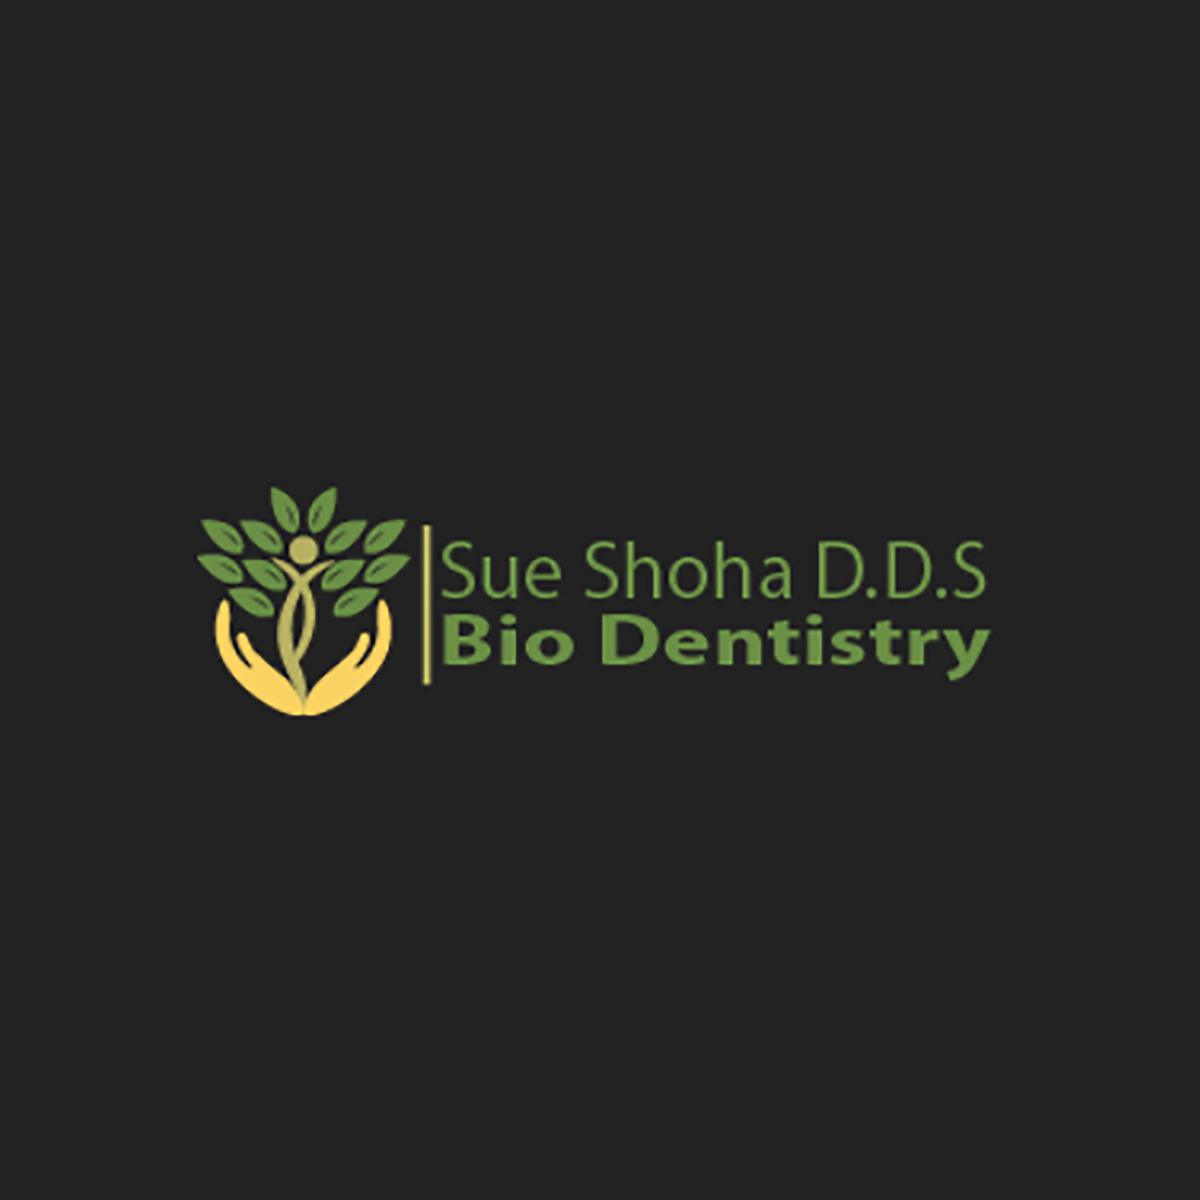 Sue Shoha D.D.S 